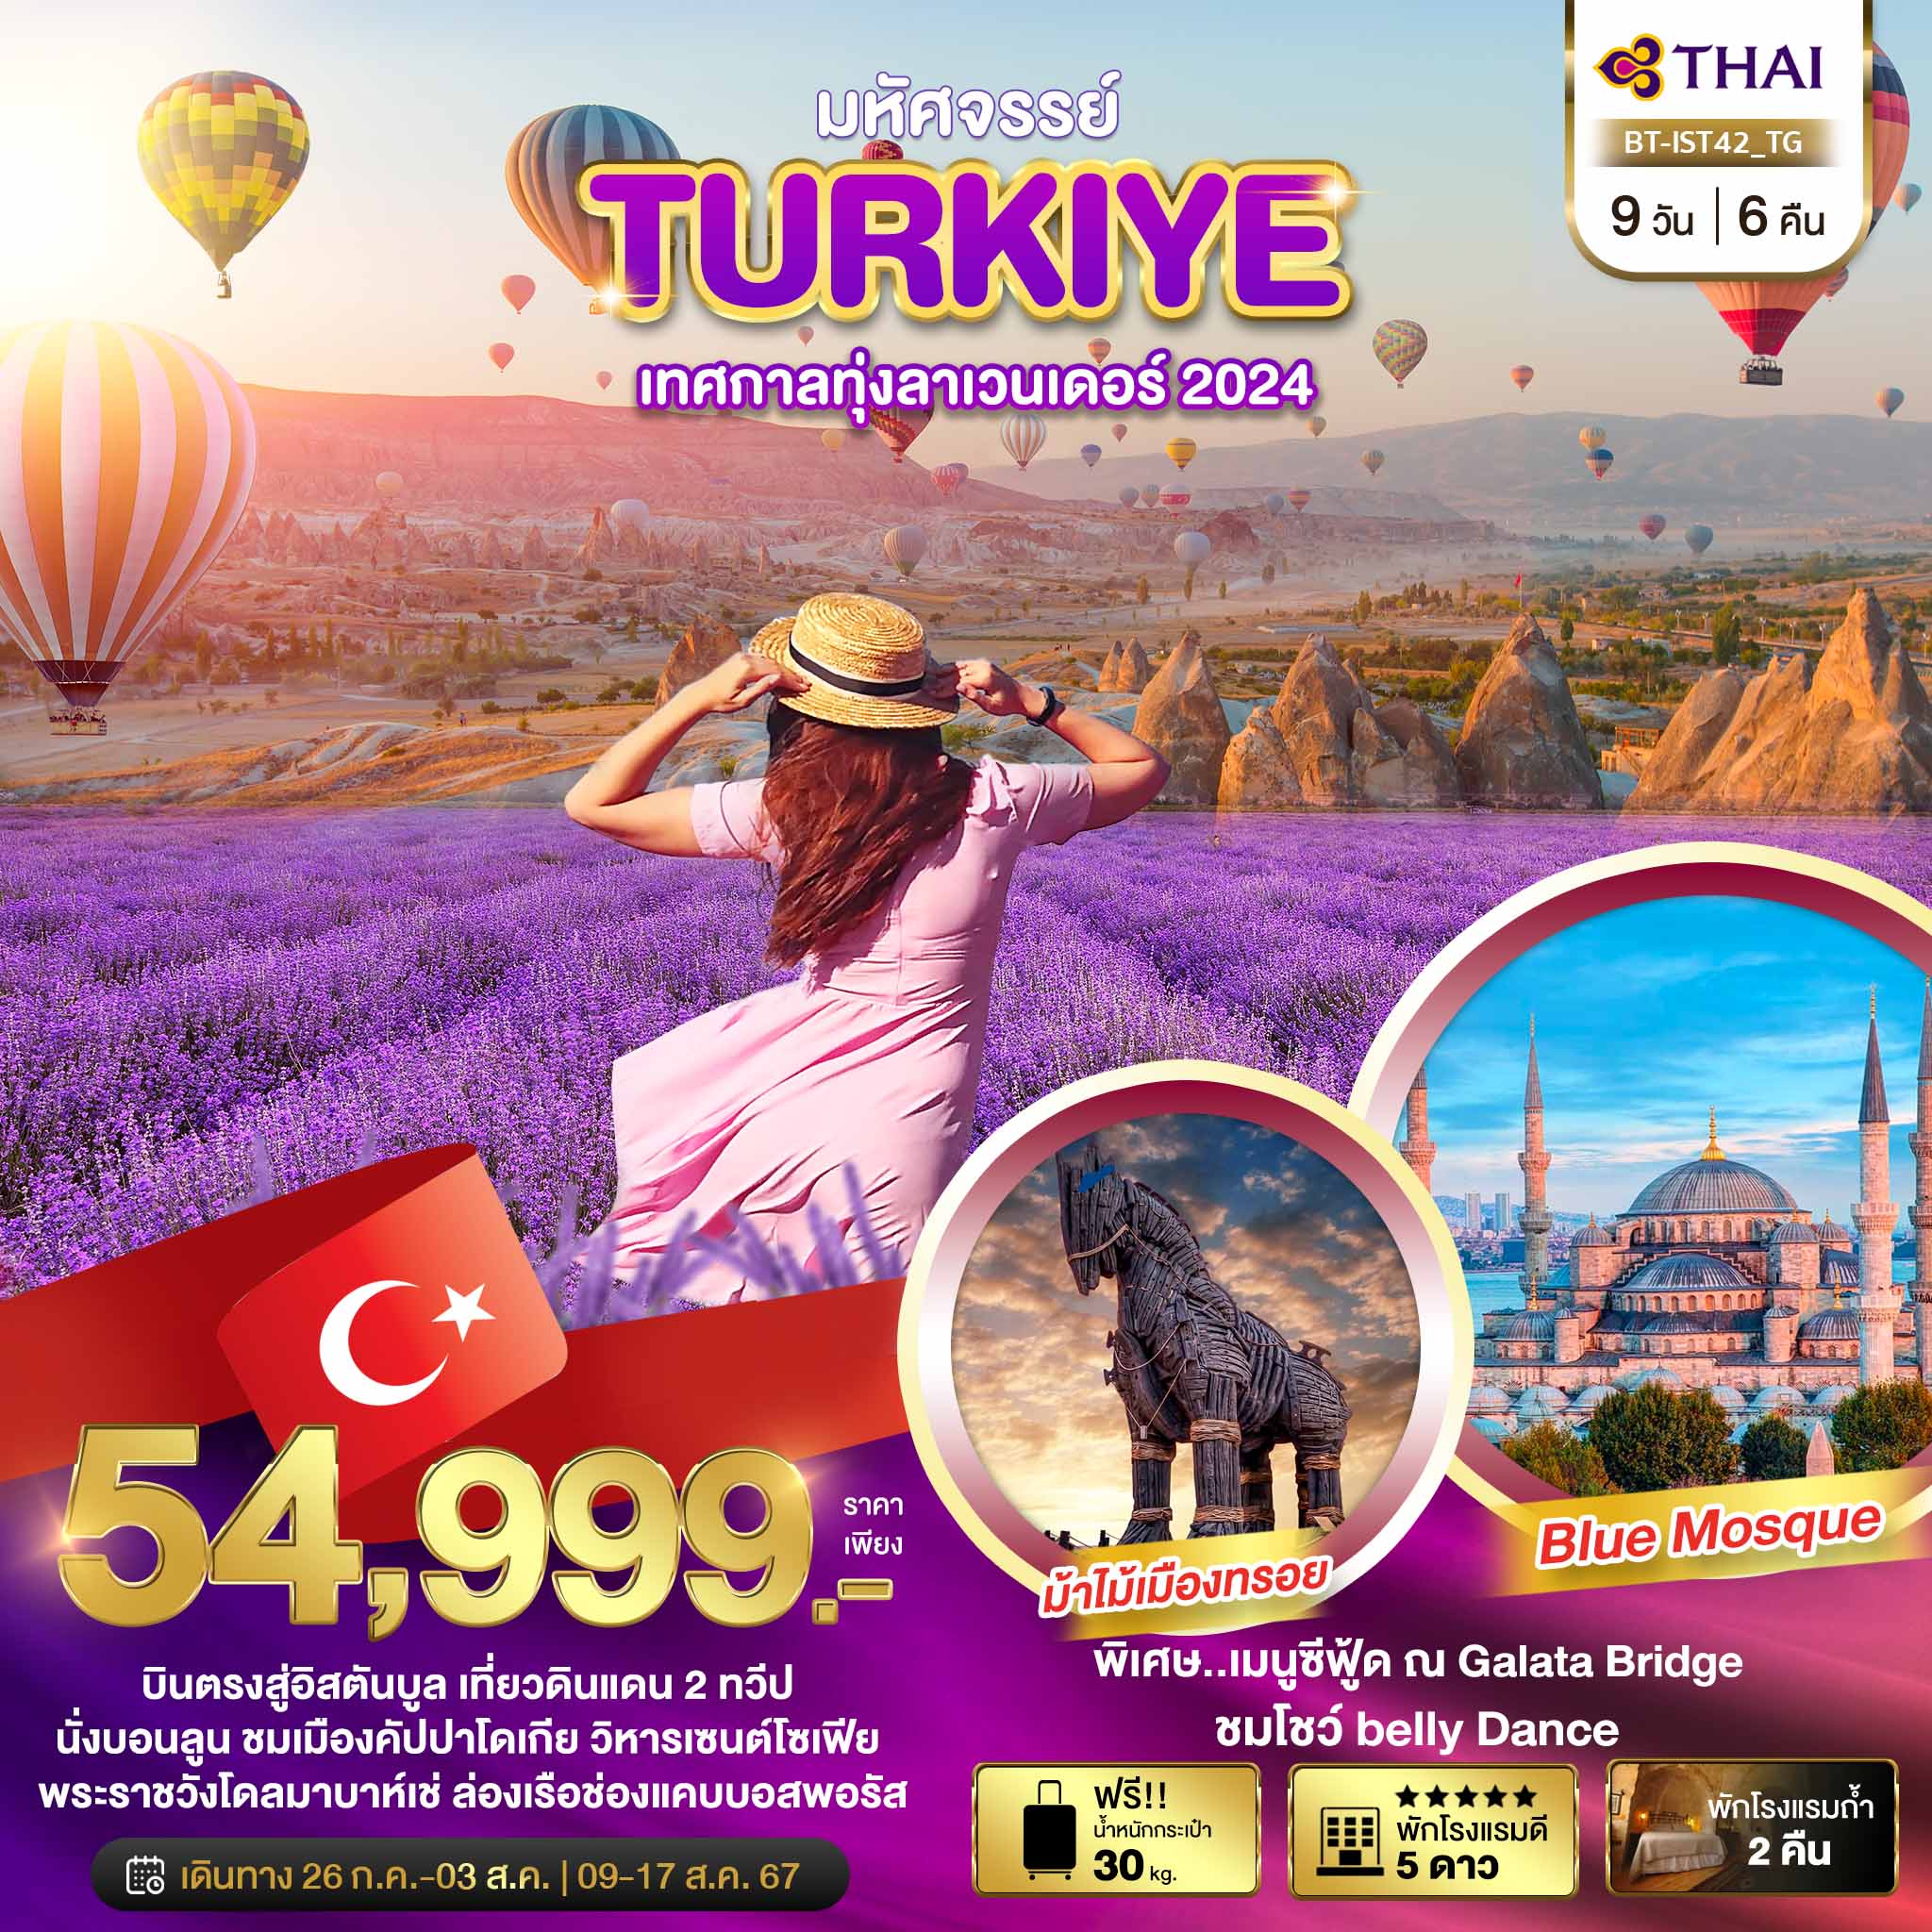 ทัวร์ตุรกี TURKIYE เทศกาลทุ่งลาเวนเดอร์ 2024 9 วัน 6 คืน